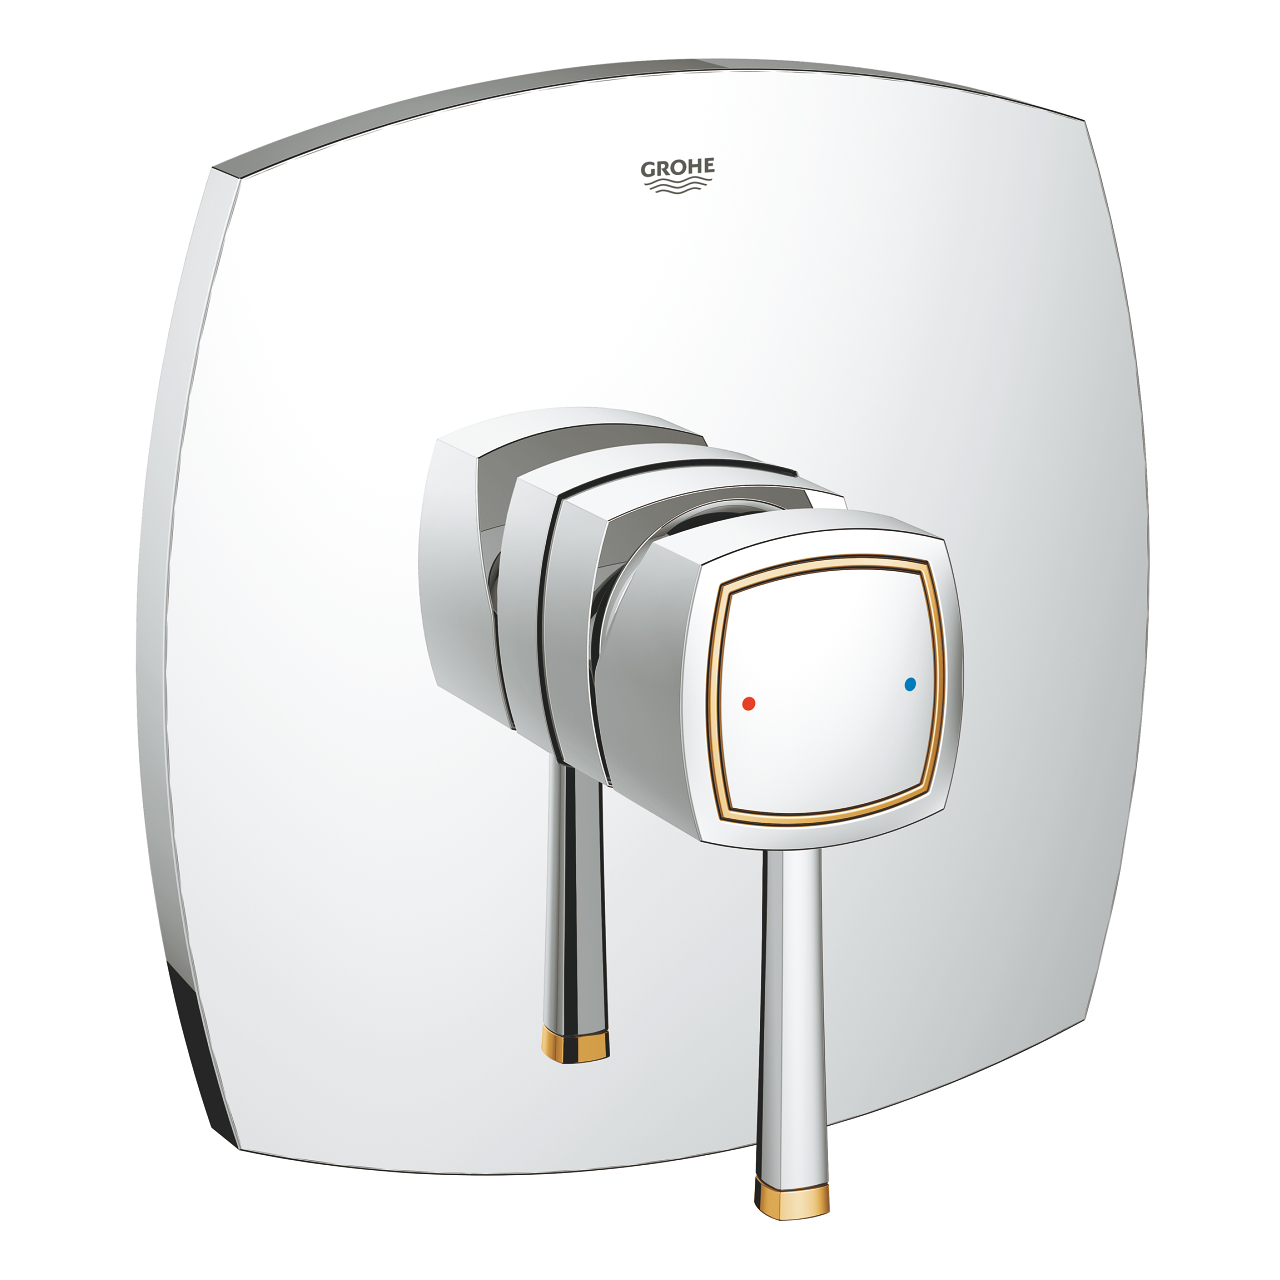 شیر توالت توکار گلد-کروم GROHE مدل Grandera کد 19932IG0